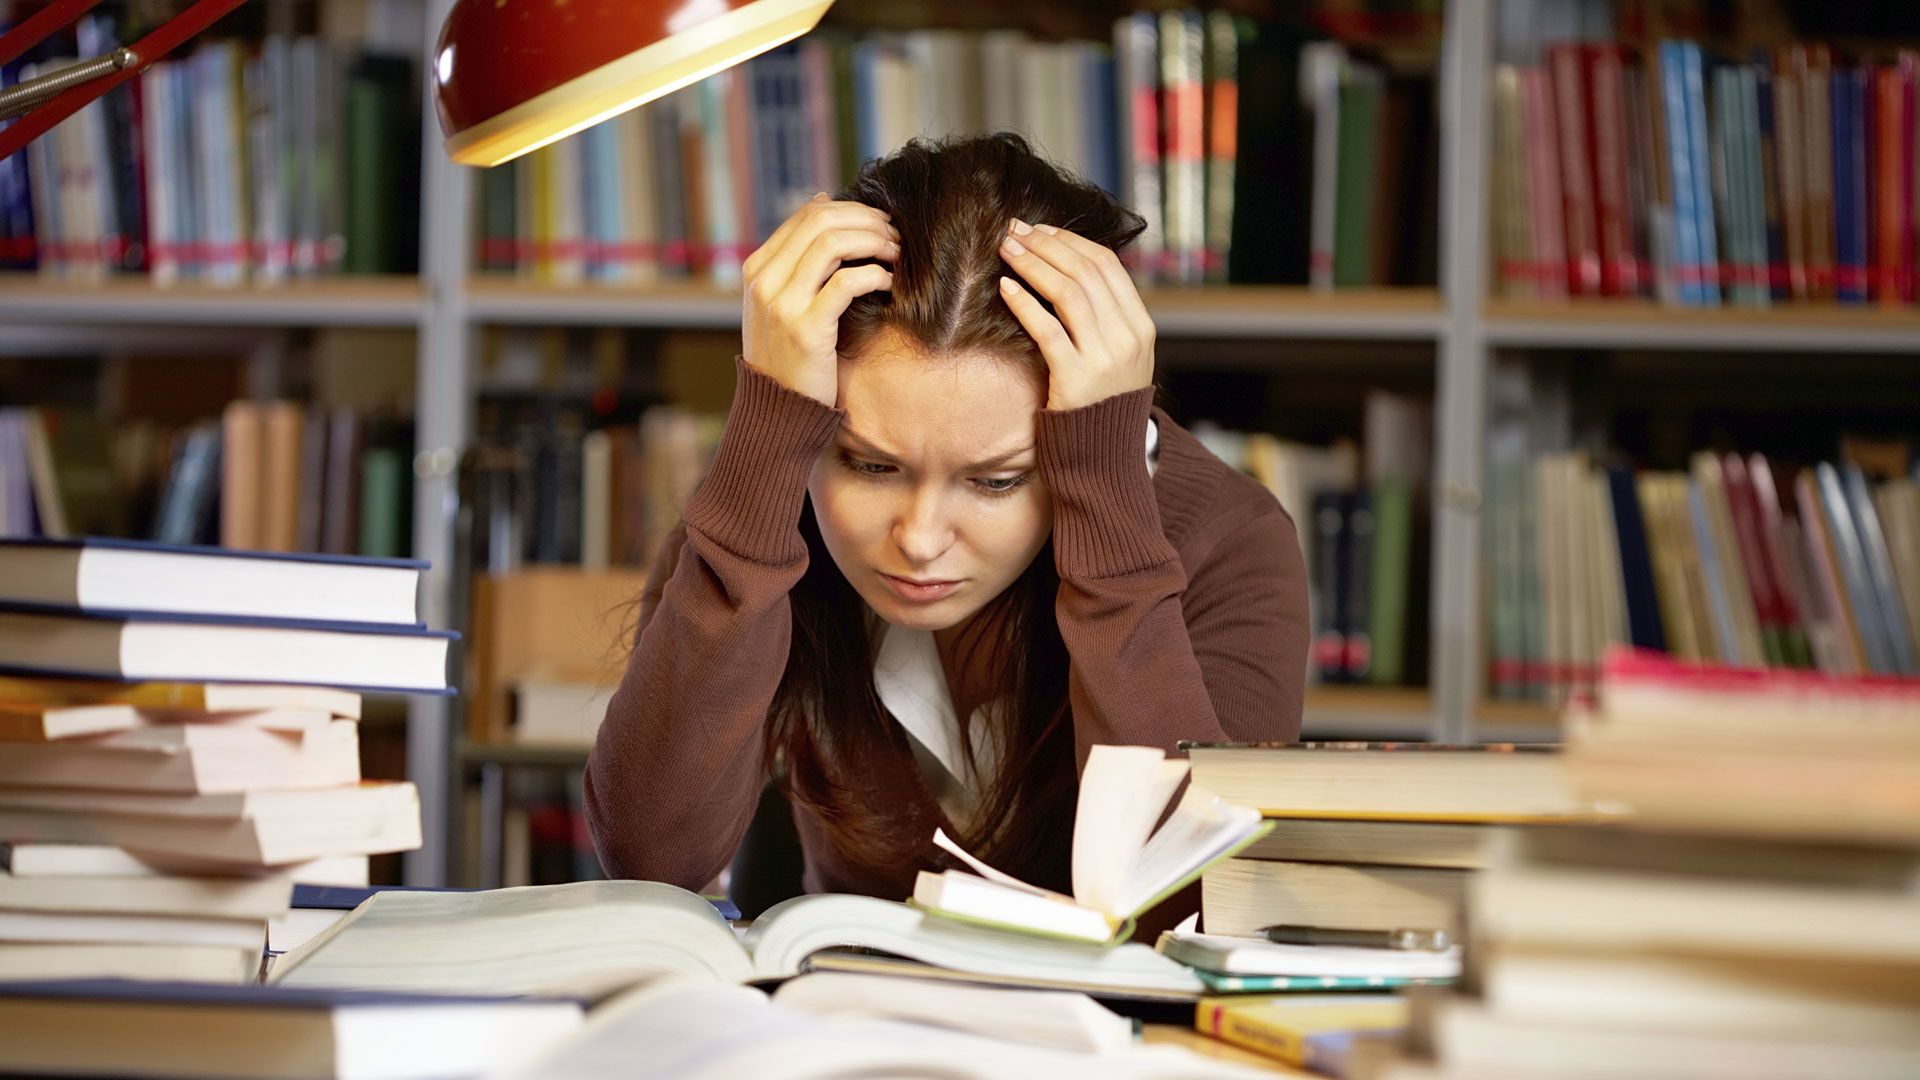 Ujian Sekolah Yang Menimbulkan Korban Jiwa Karena Siswa ‘Stress’